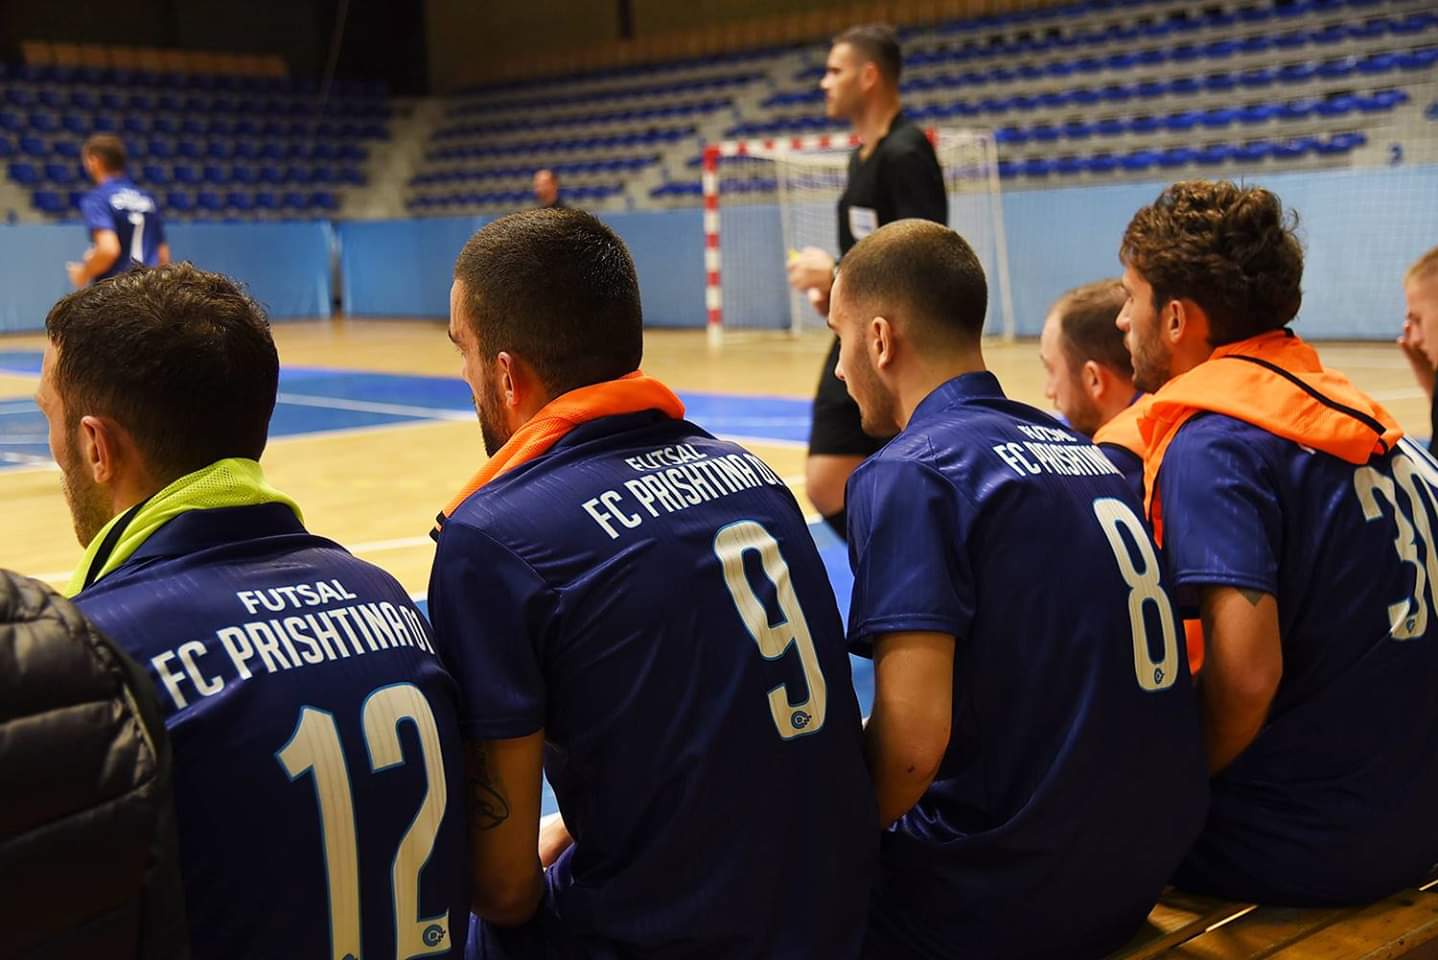 Ja kur zhvillohet finalja e madhe në Futsall